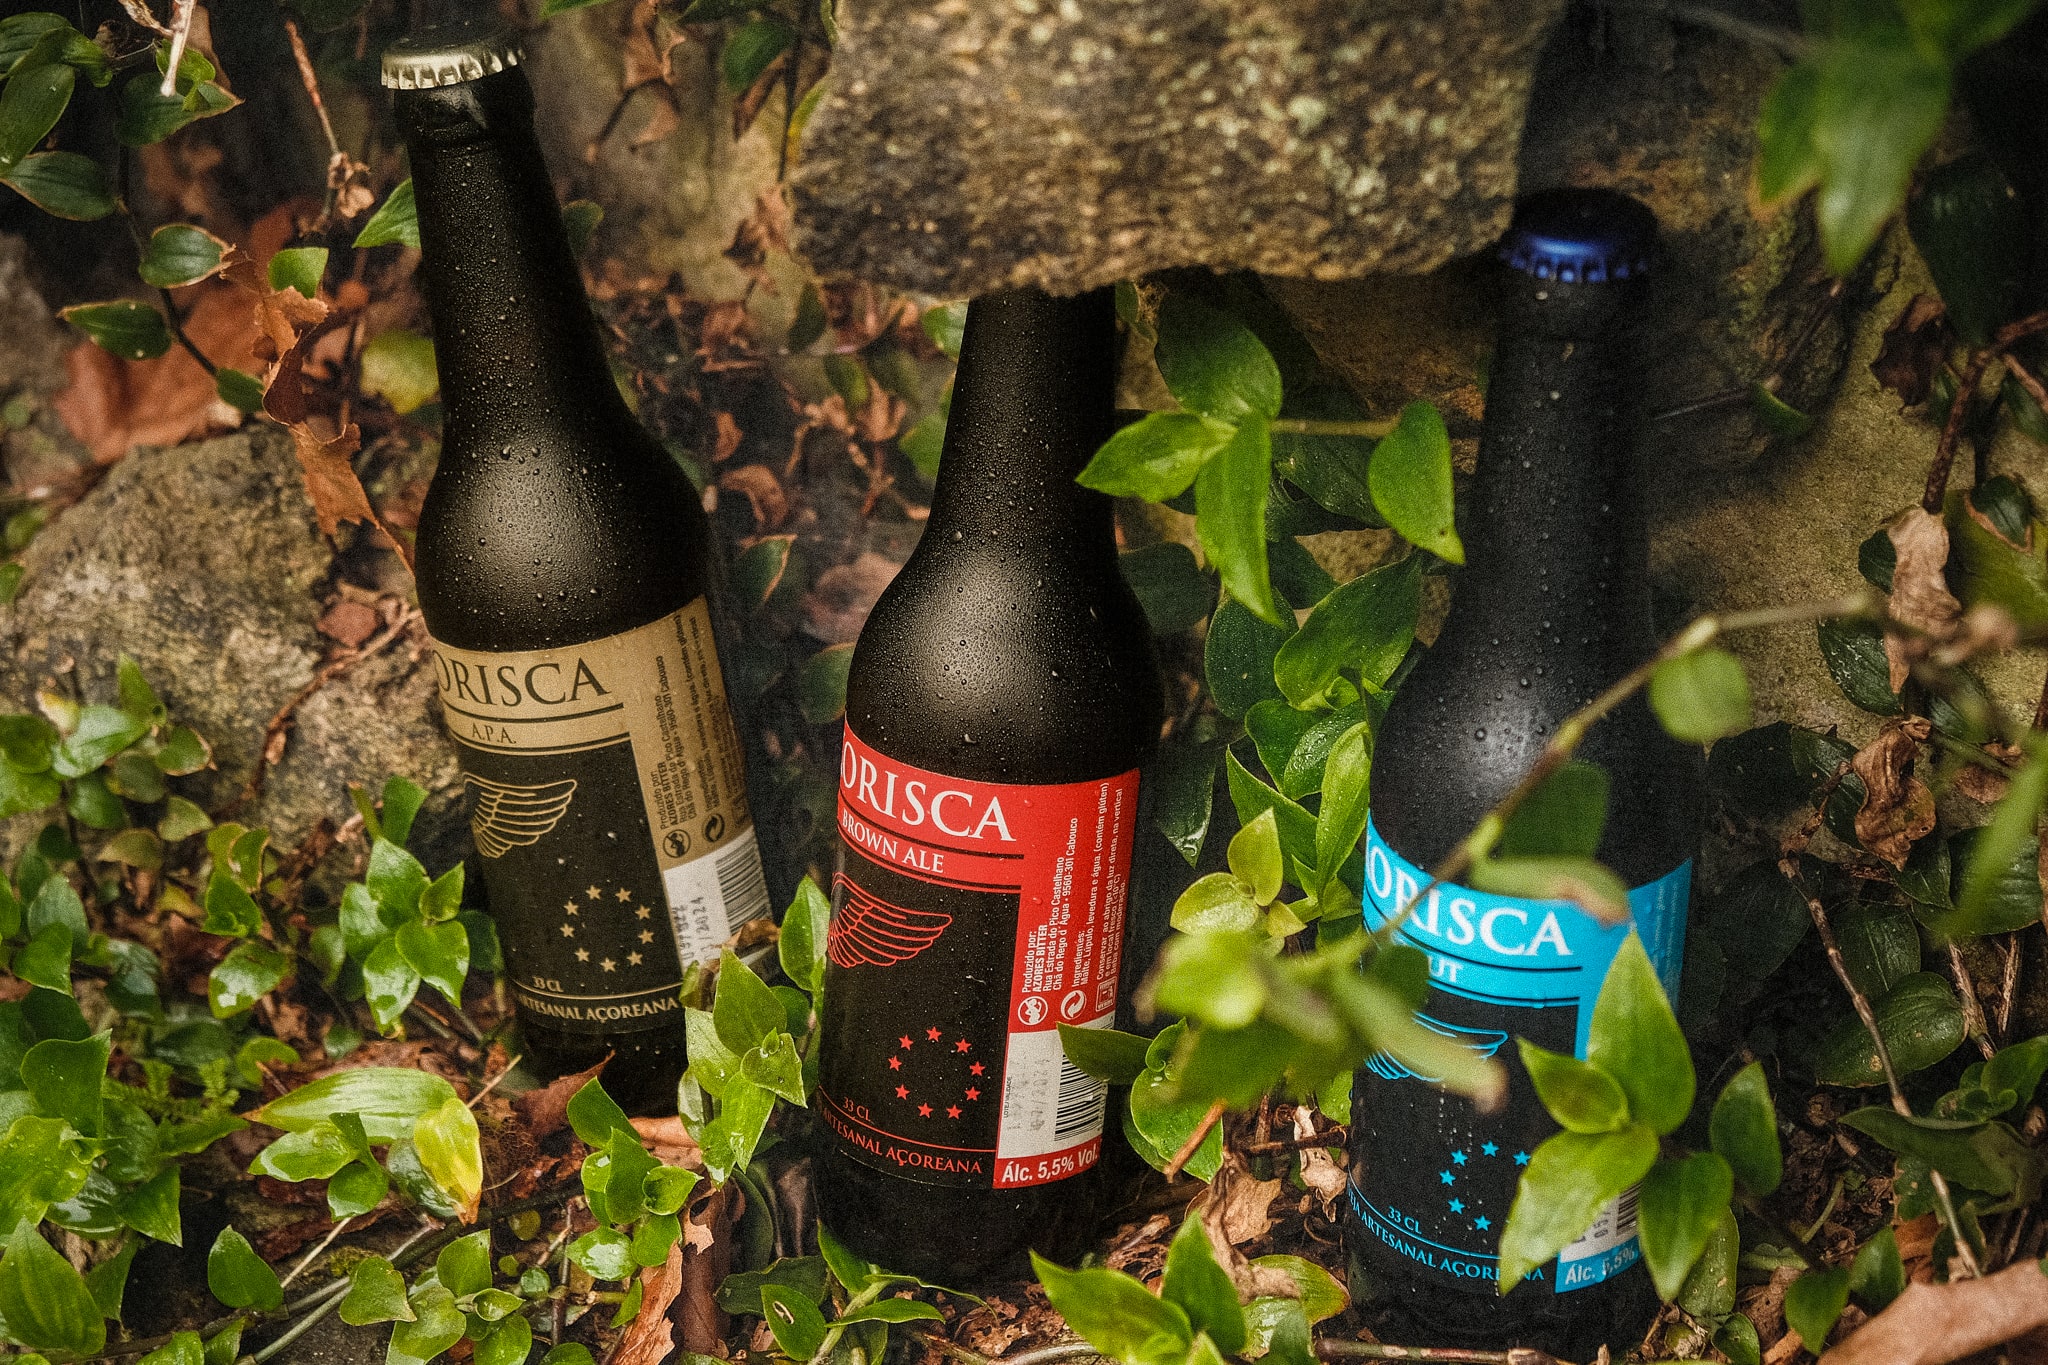 Cerveja artesanal açoriana Korisca Clássica II (APA), Korisca Clássica I (Brown Ale) e Korisca Clássica III (Stout), no chão com vegetação verde e folhas castanhas, São Miguel, Açores.